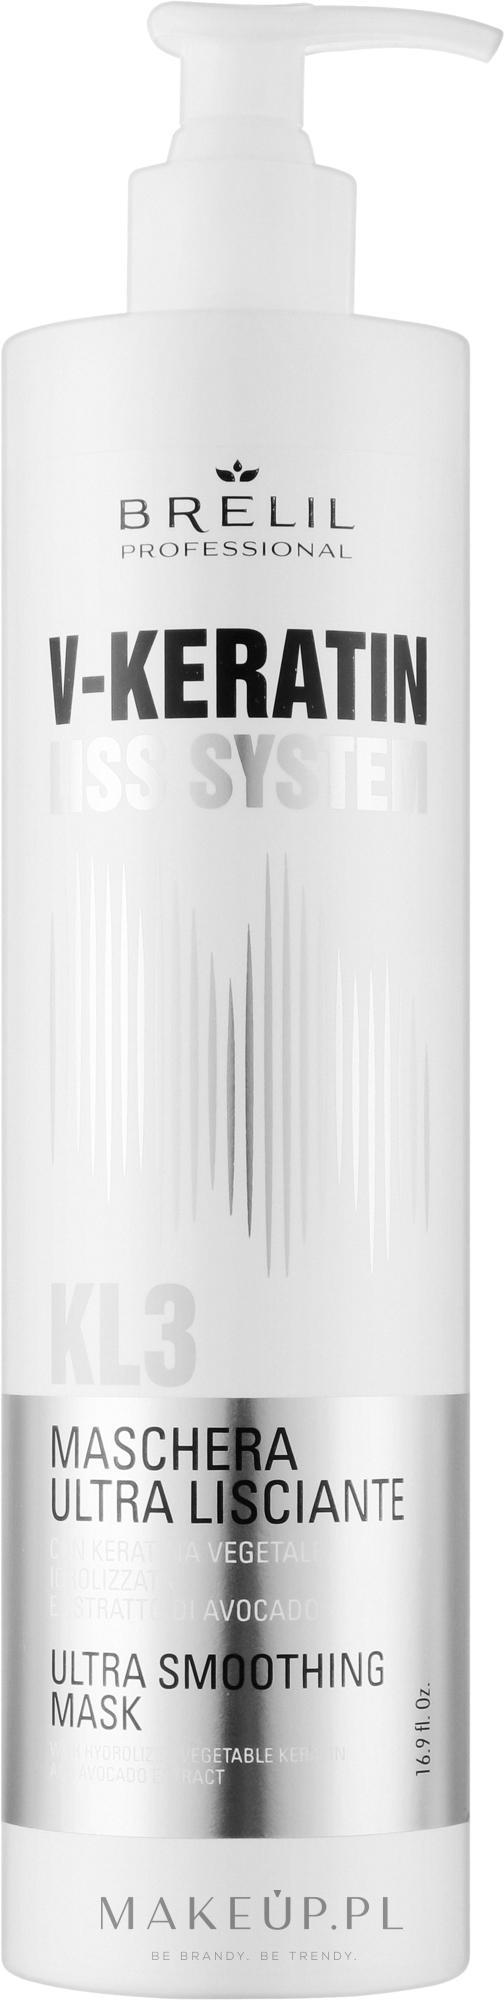 Ultra wygładzająca maska do włosów - Brelil V-Keratin Liss System KL3 Ultra Smoothing Mask — Zdjęcie 500 ml